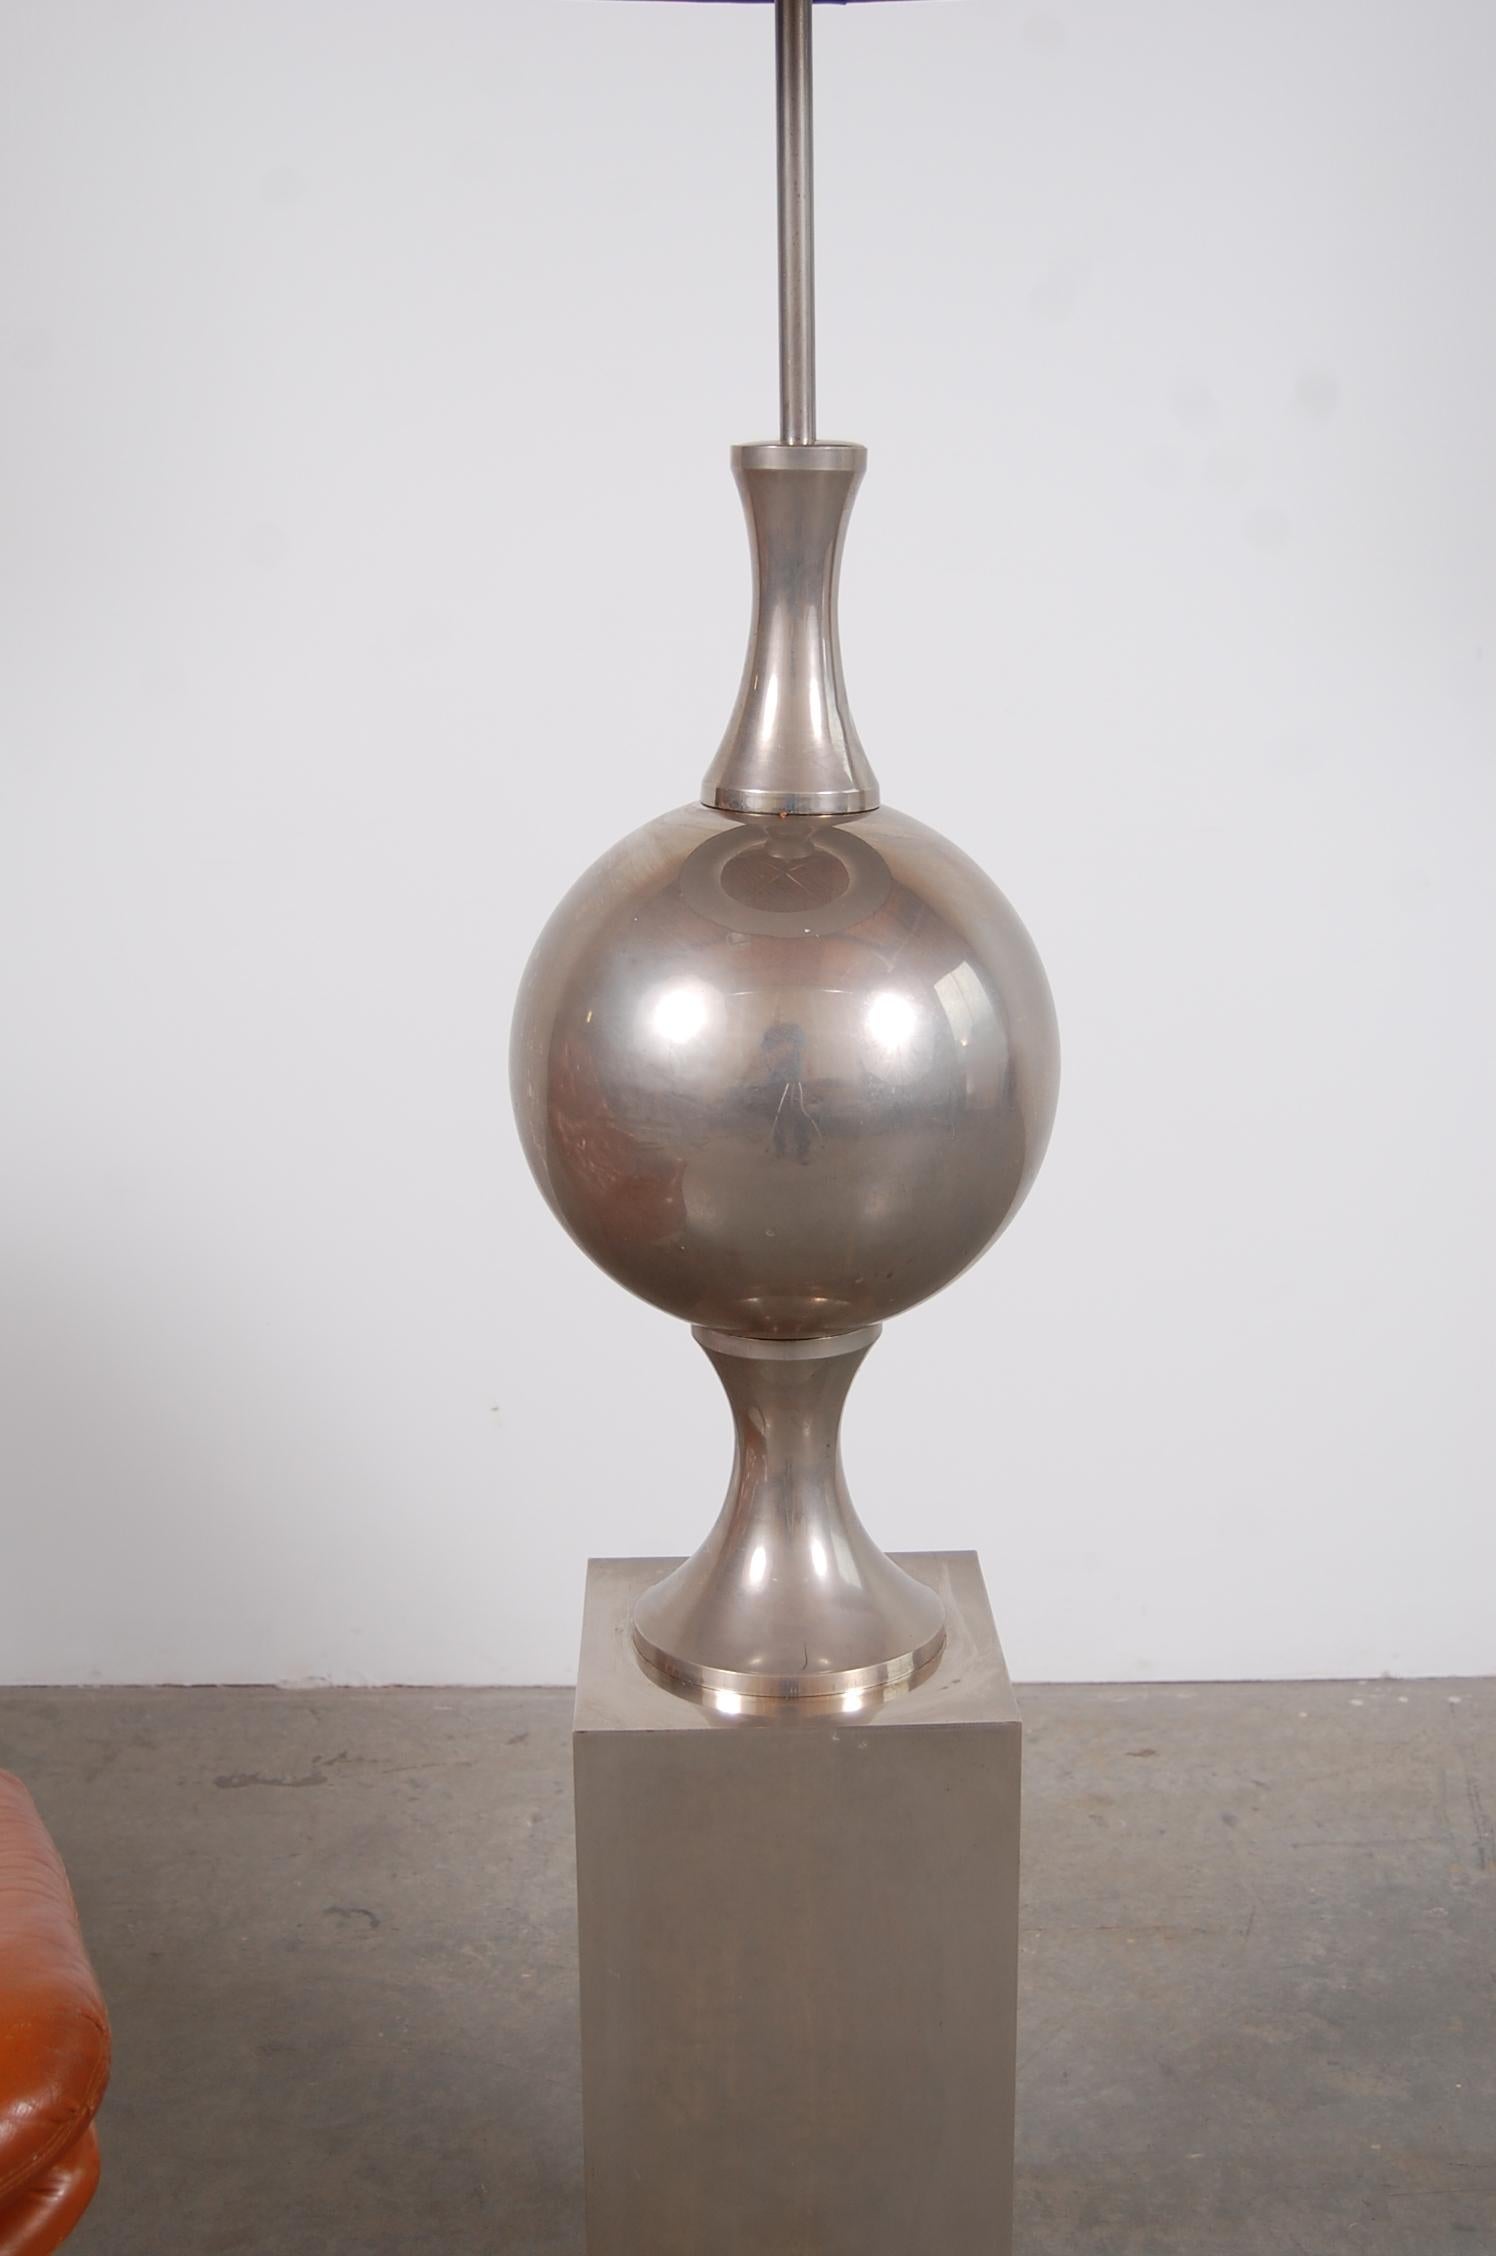 Steel Nickel Plated Philippe Barbier Floor Lamp from Paris